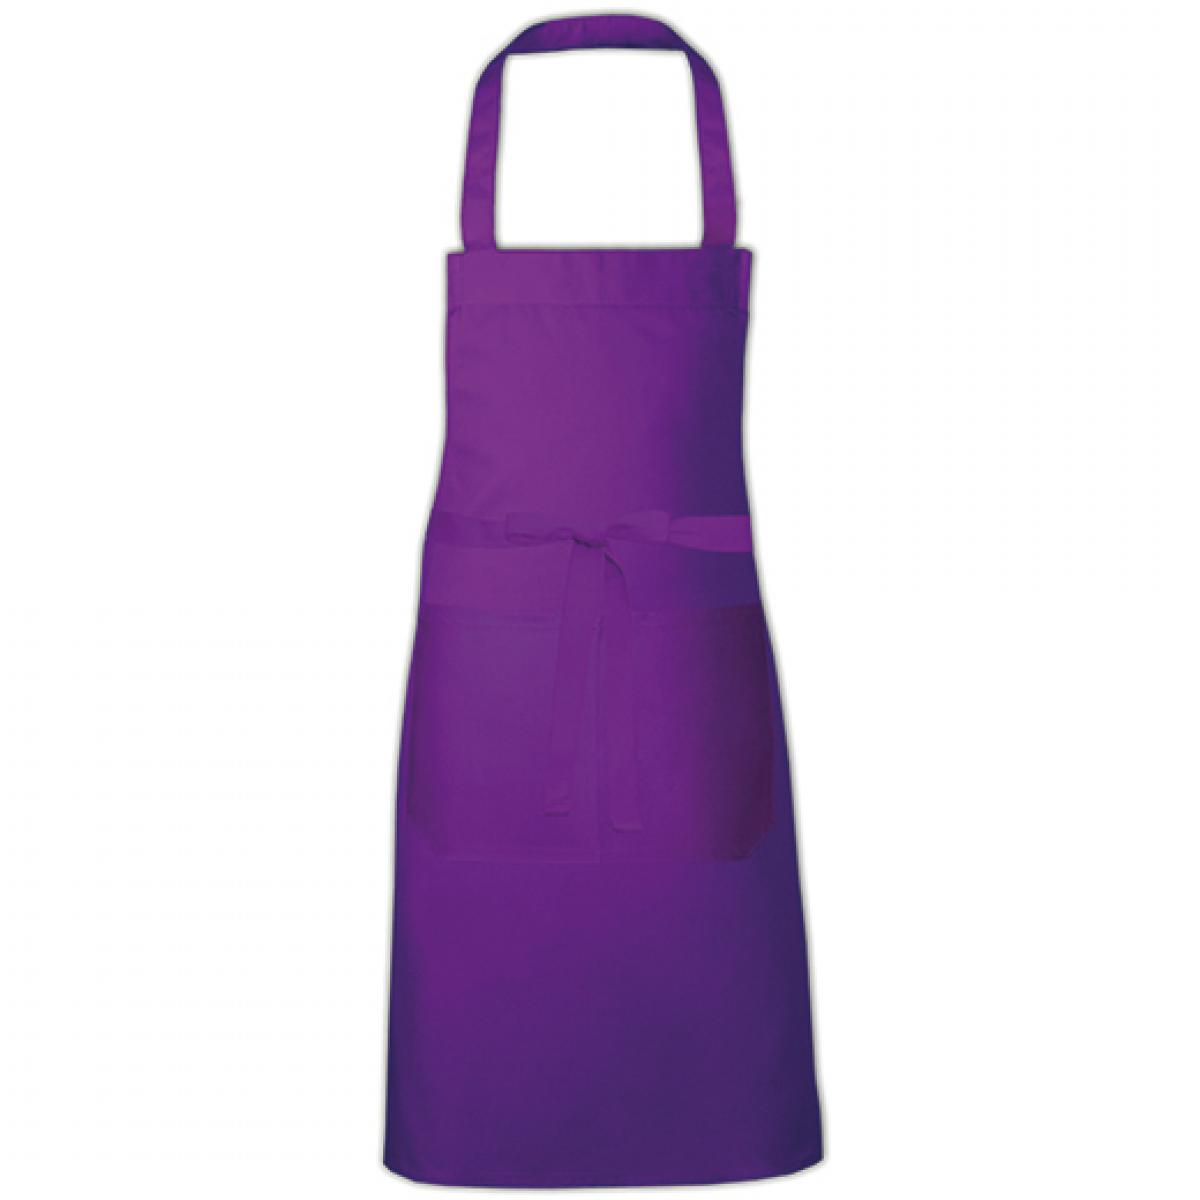 Hersteller: Link Kitchen Wear Herstellernummer: HS8073 Artikelbezeichnung: Hobby Apron - 73 x 80 cm - Waschbar bis 60 °C Farbe: Purple